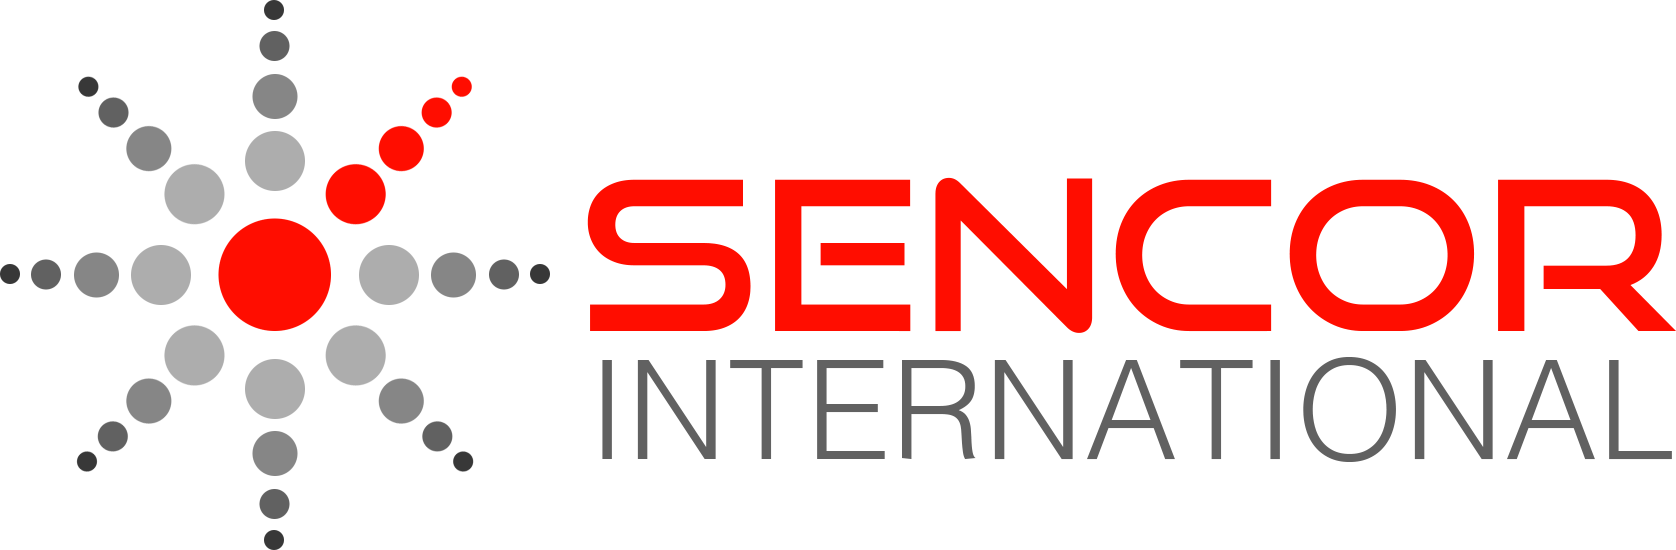 Our Technology Partner Sencor